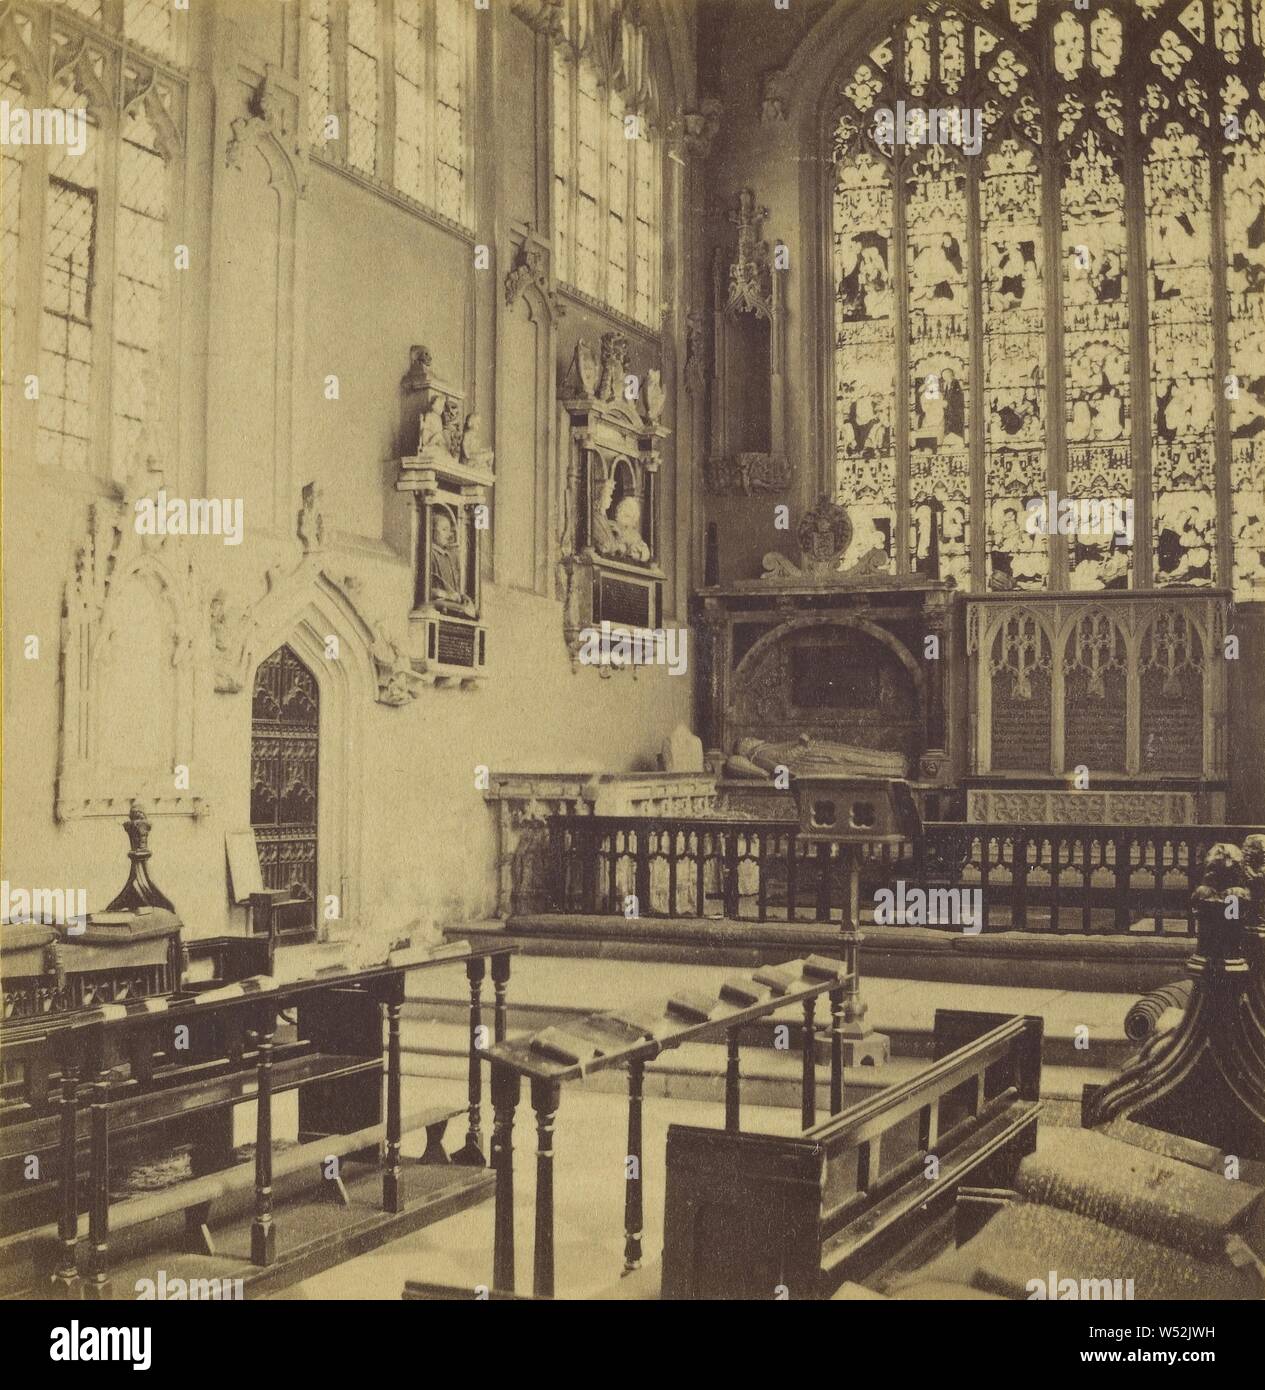 Stratford-upon-Avon - Die Kirche, Interieur der Altarraum., Unbekannten, Britischen, ungefähr 1860, Eiweiß silber Drucken Stockfoto